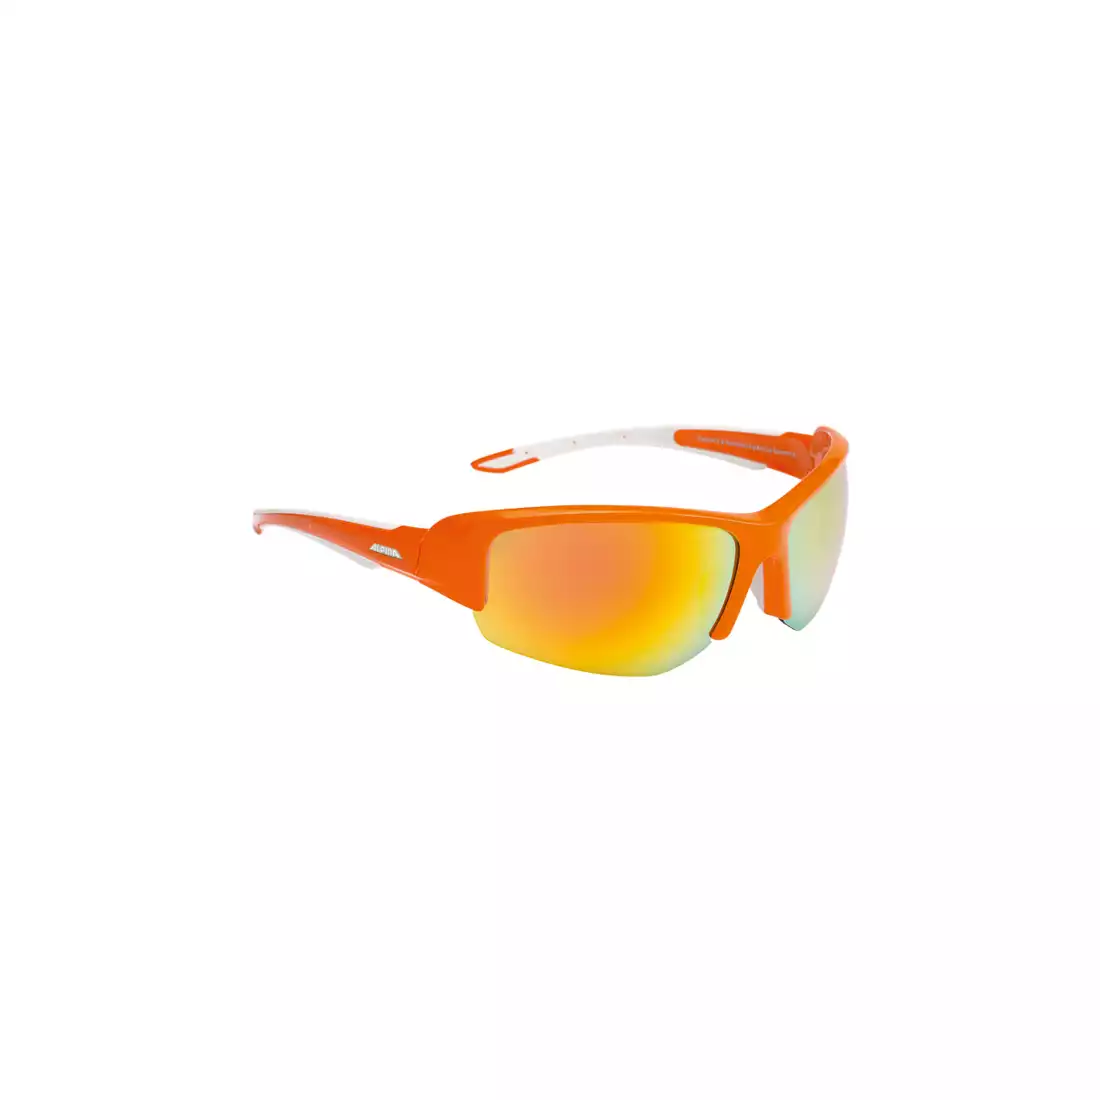 ALPINA - okulary sportowe CALLUM 2.0 - pomarańczowy-biały / szkło ceramic mirror pomar.